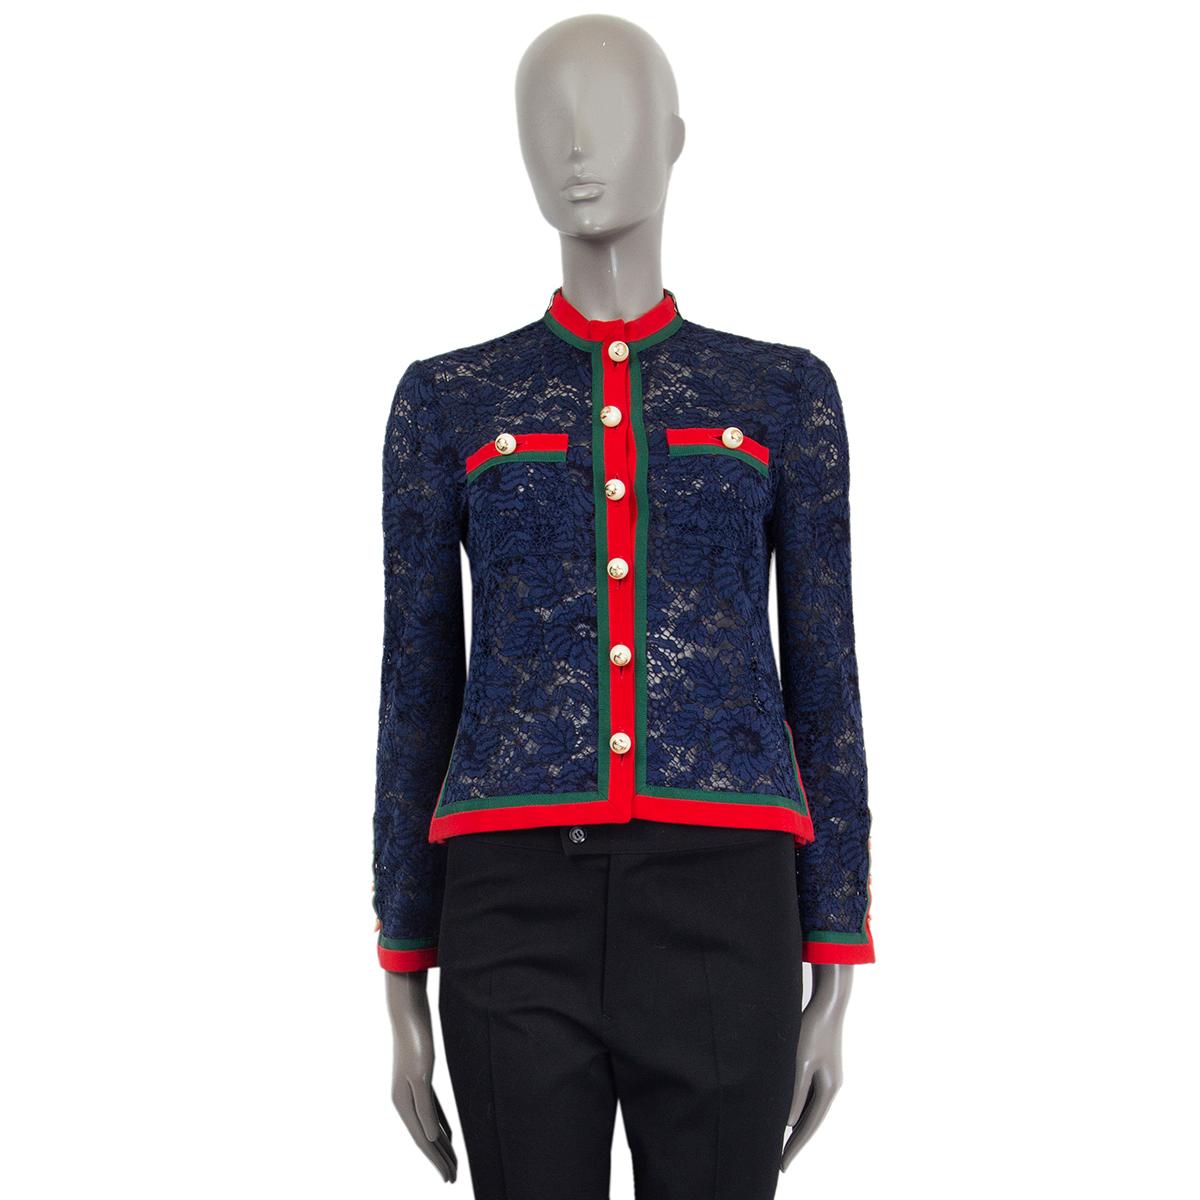 Gucci-Langarmjacke aus marineblauer Spitze (ohne Etikett/Baumwollmischung) mit rundem, geteiltem Halsausschnitt und aufgesetzten Brusttaschen, die mit den charakteristischen roten und grünen Gurtbändern und GG-Knöpfen aus Kunstperlen verziert sind.